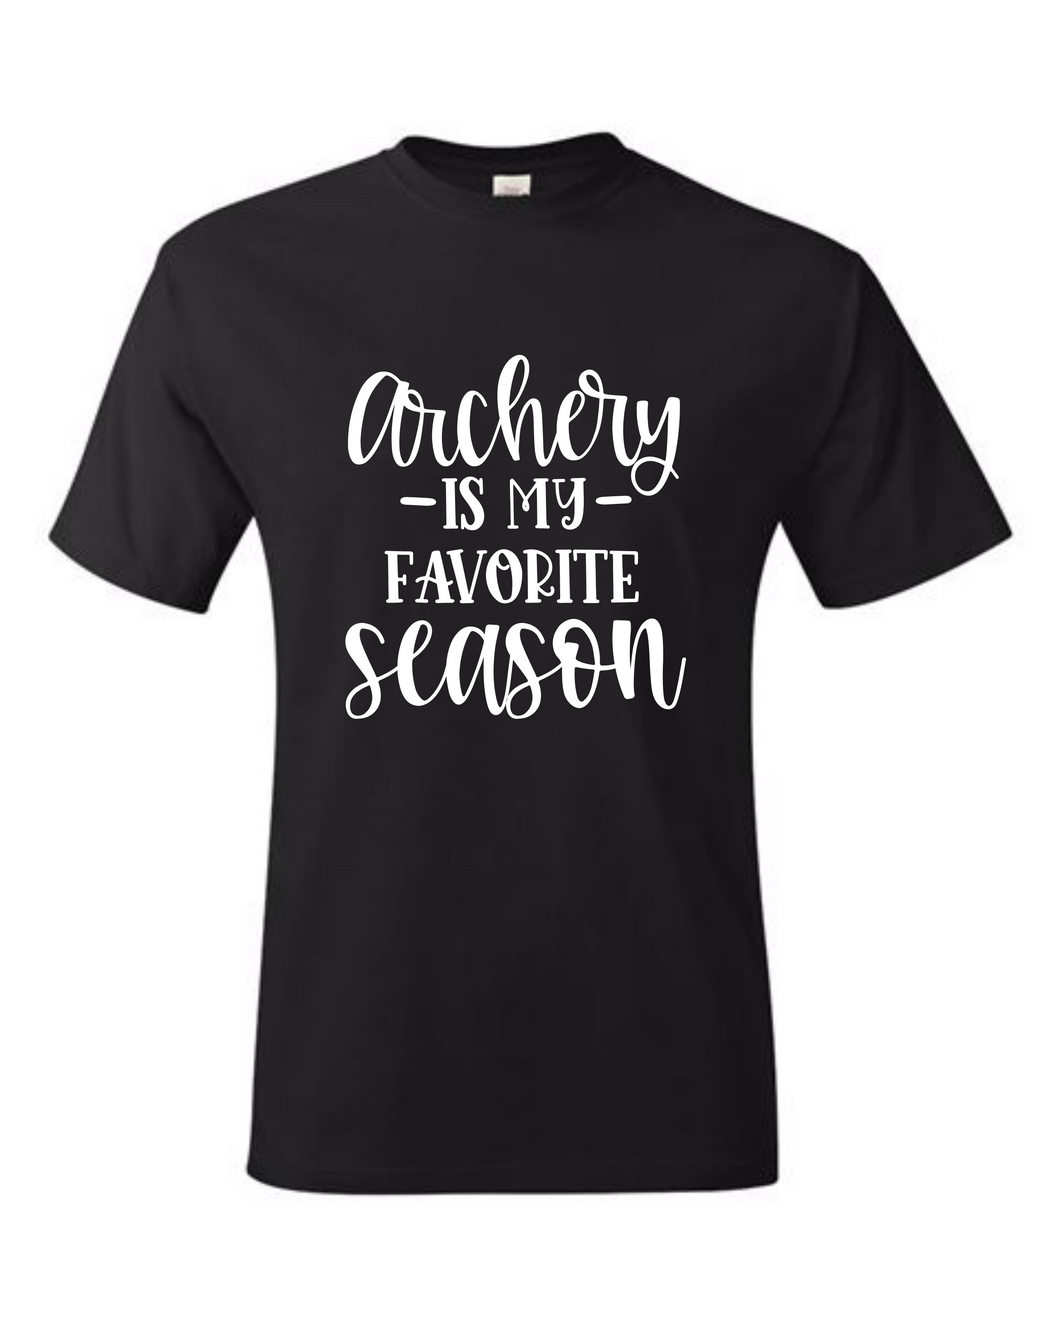 Archery is Favorite Season Tshirt